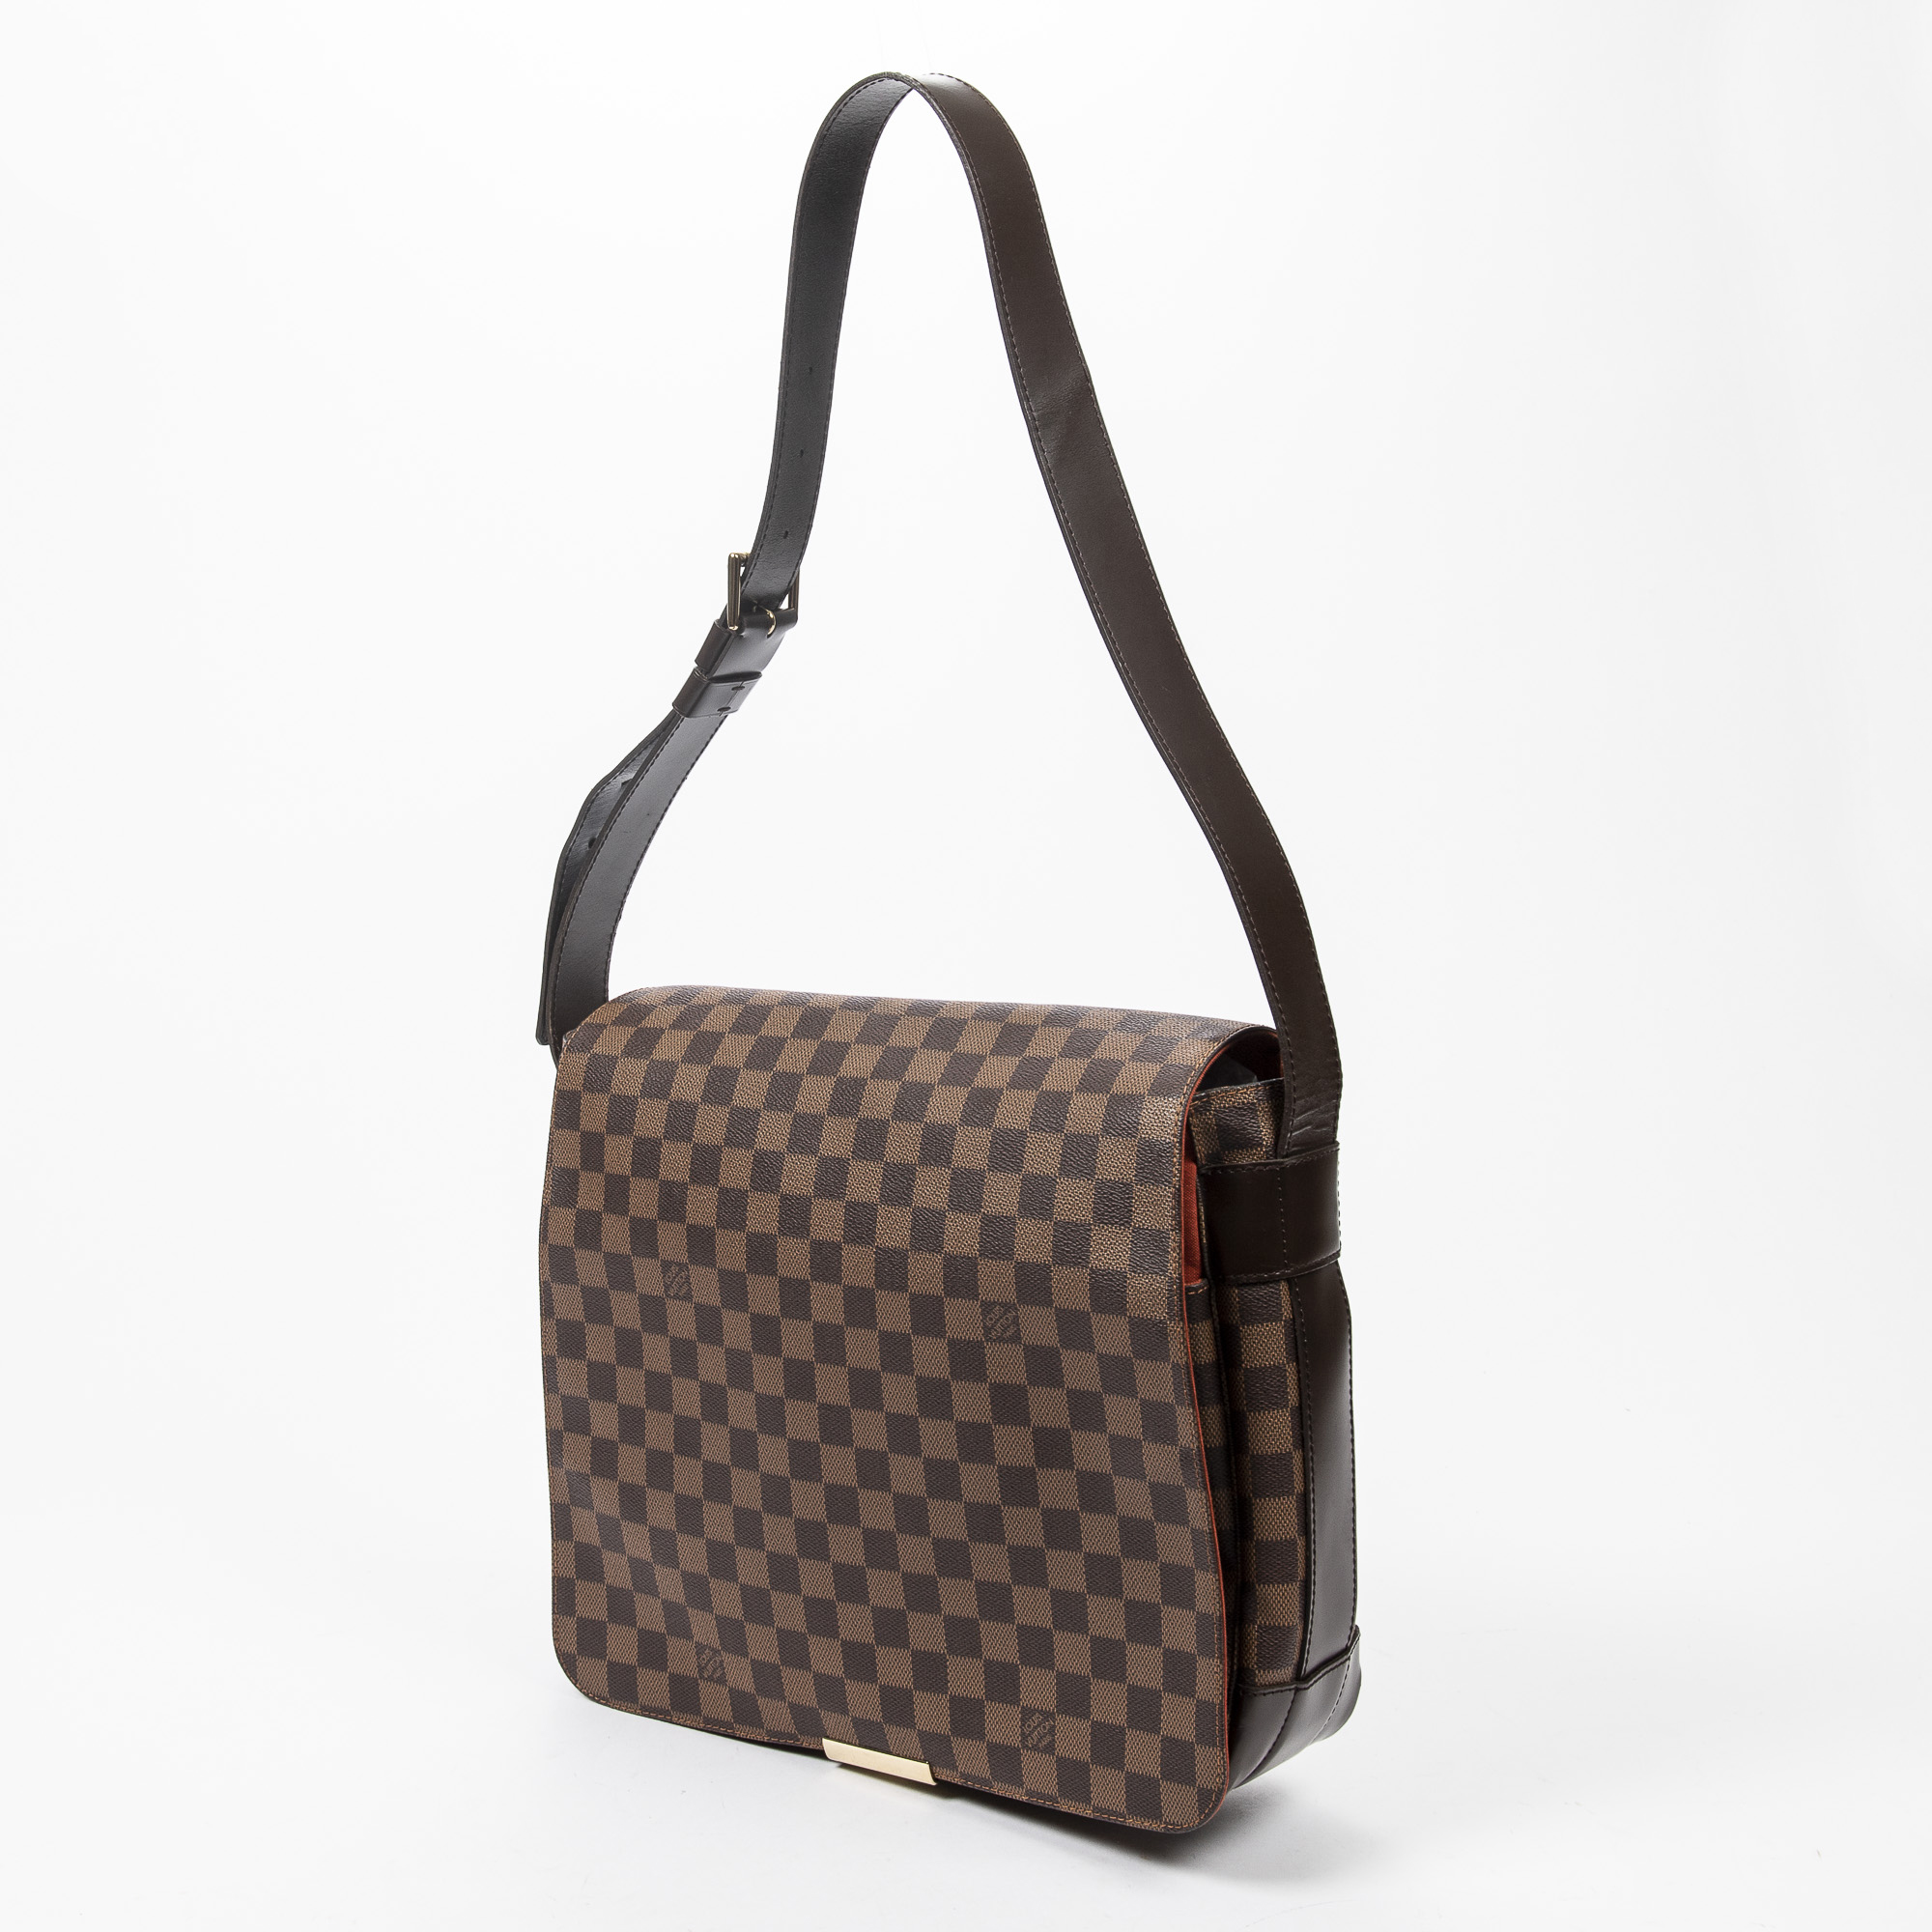 Louis Vuitton Damier Ebene Bastille Messenger Bag